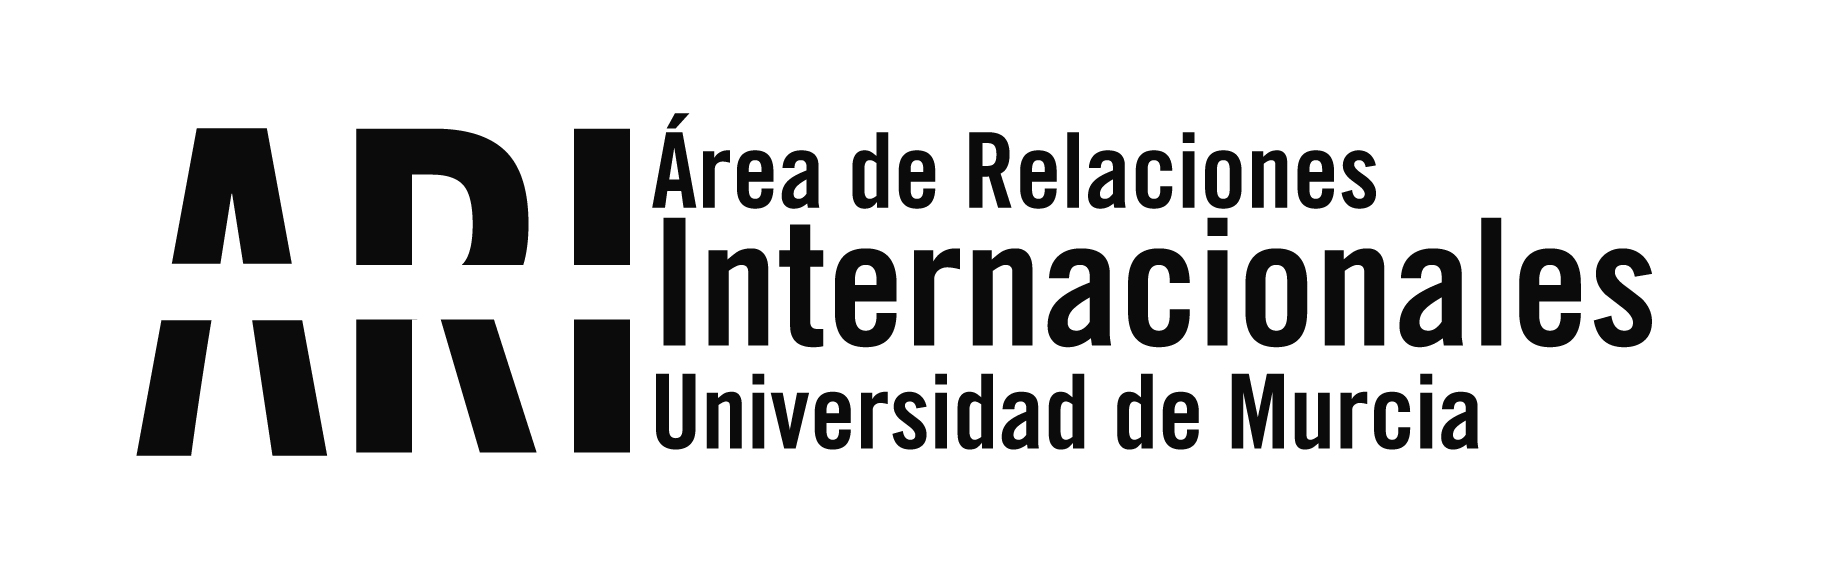 2017-03 Recepción alumnos ILA del Consul Español en Cordoba - Argentina - Eventos - Área de Relaciones Internacionales